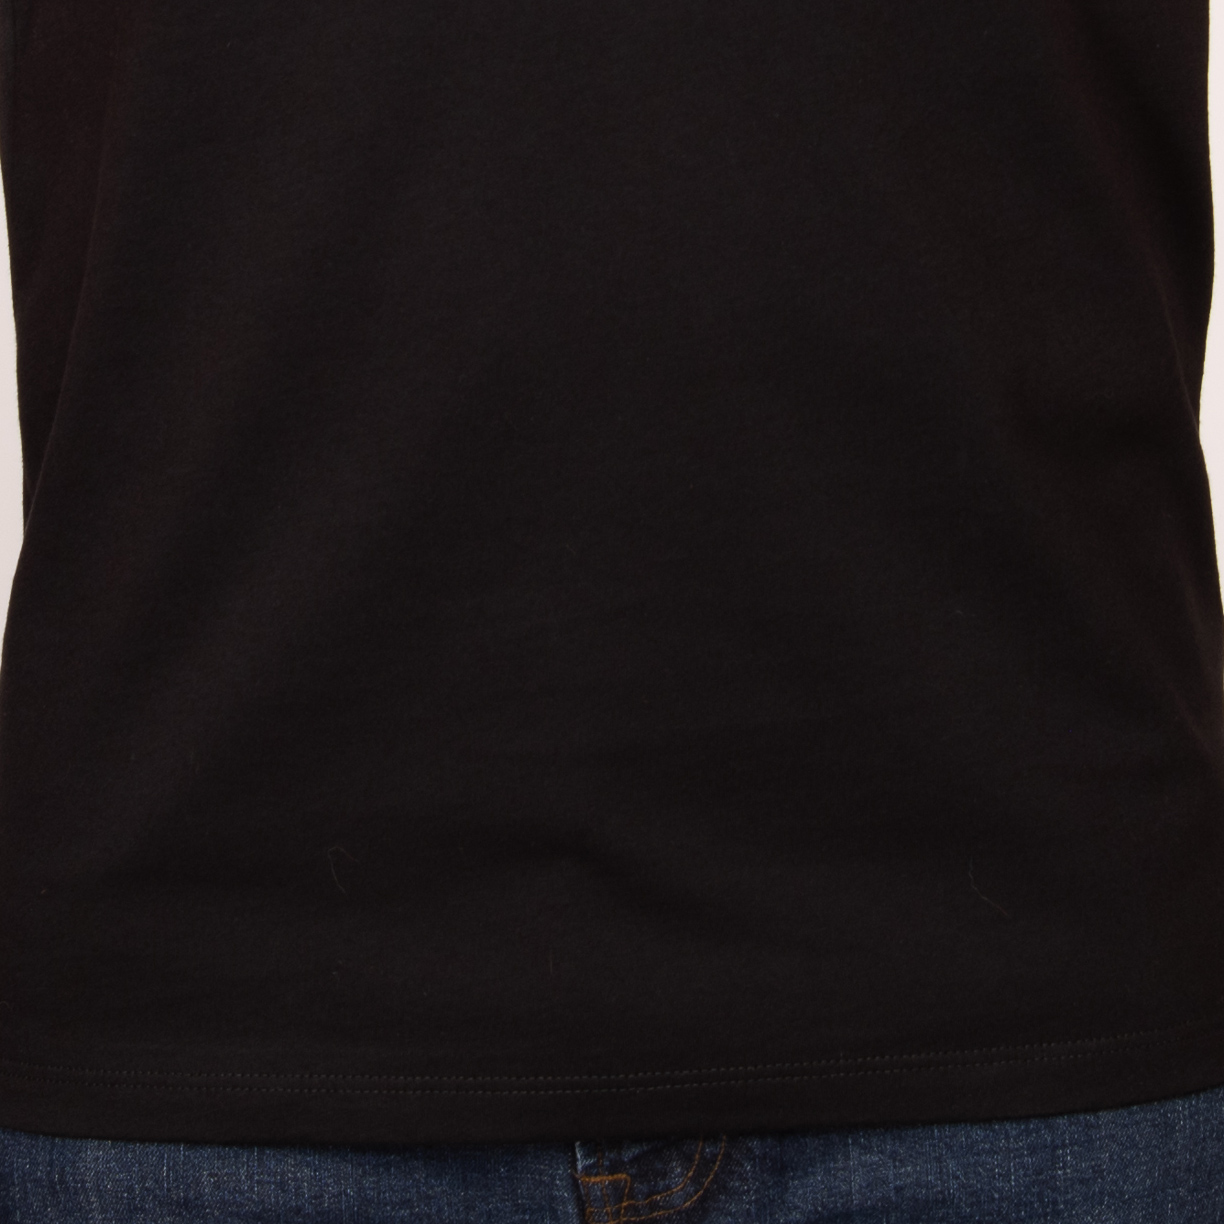 Personaliza tu camiseta NEGRA o COLOR UNISEX – Don Copión